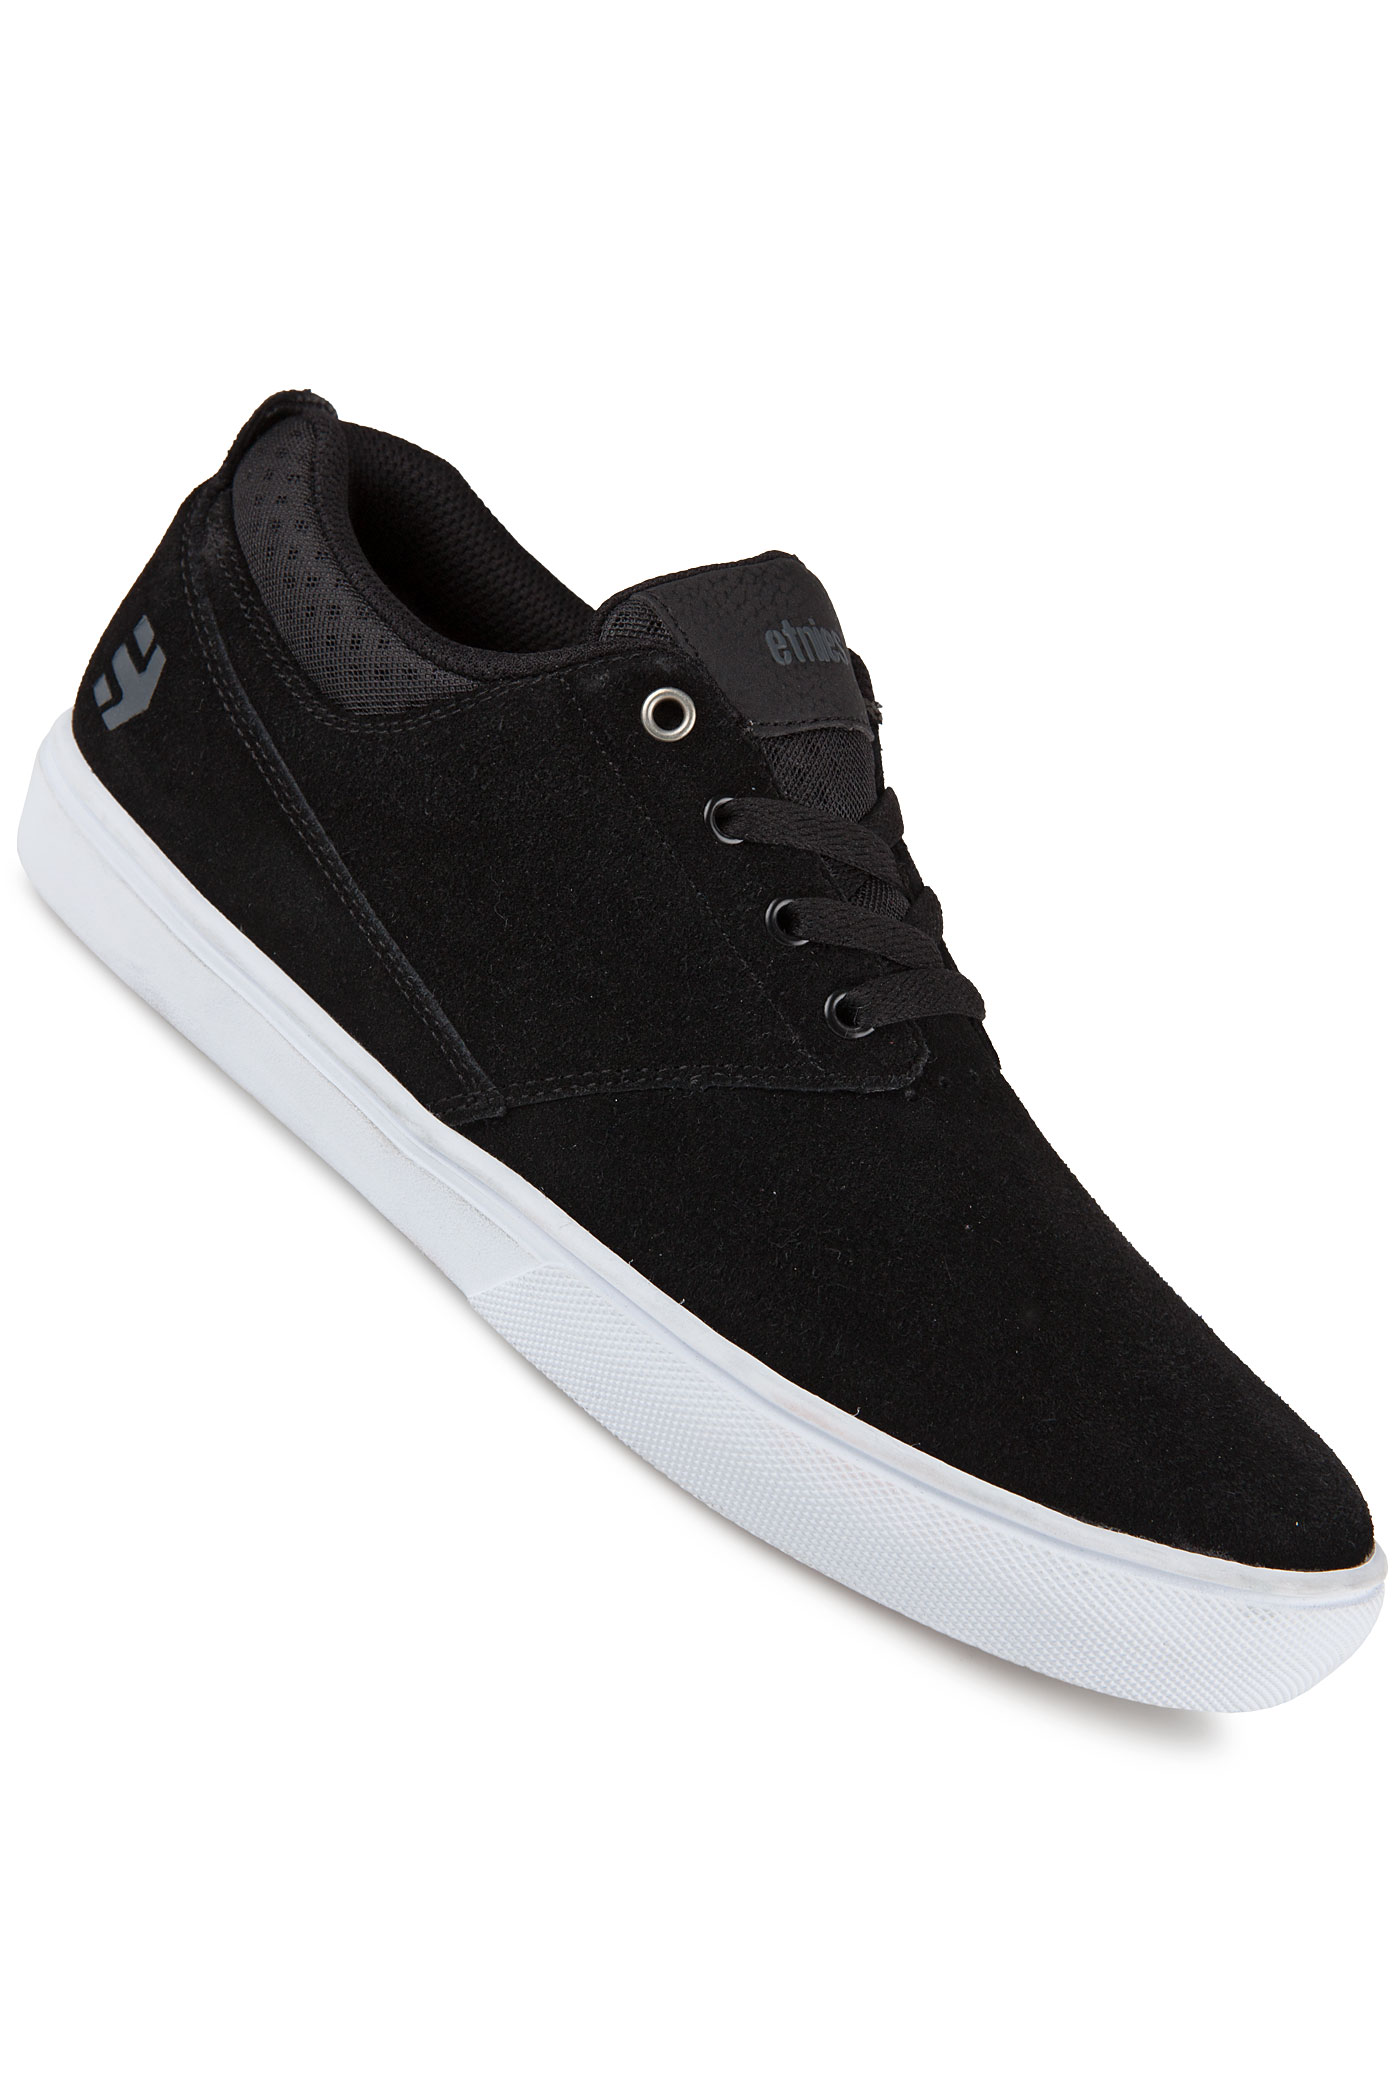 Etnies Jameson MT Shoe (black white) buy at skatedeluxe